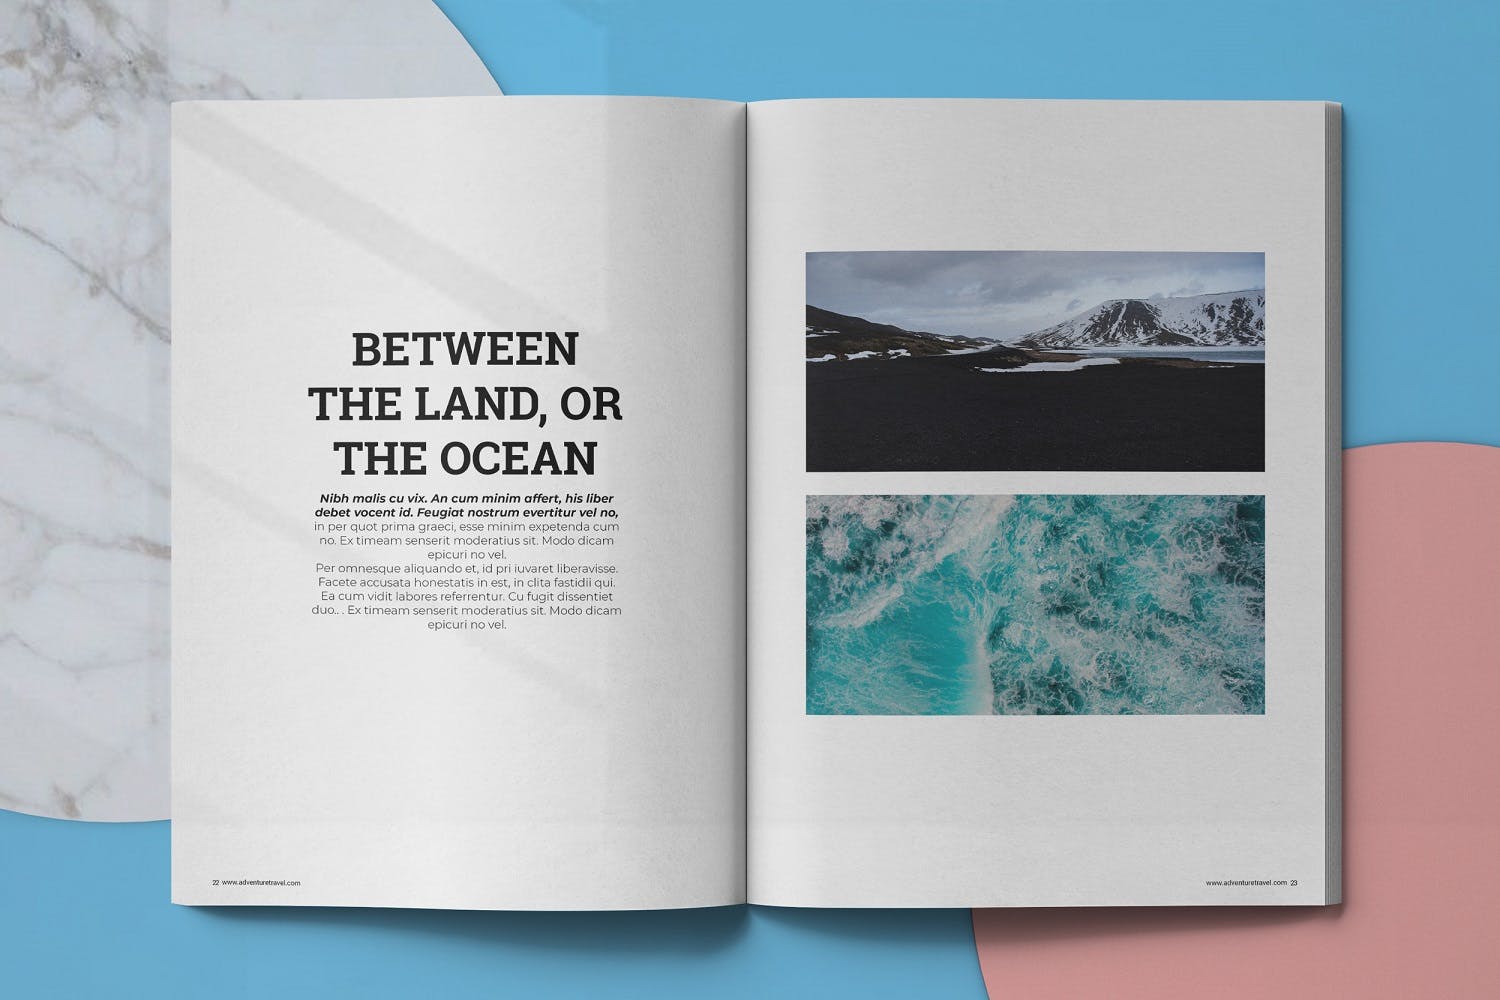 冒险旅行主题大洋岛精选杂志排版设计模板 Adventure Travel Magazine Template插图11